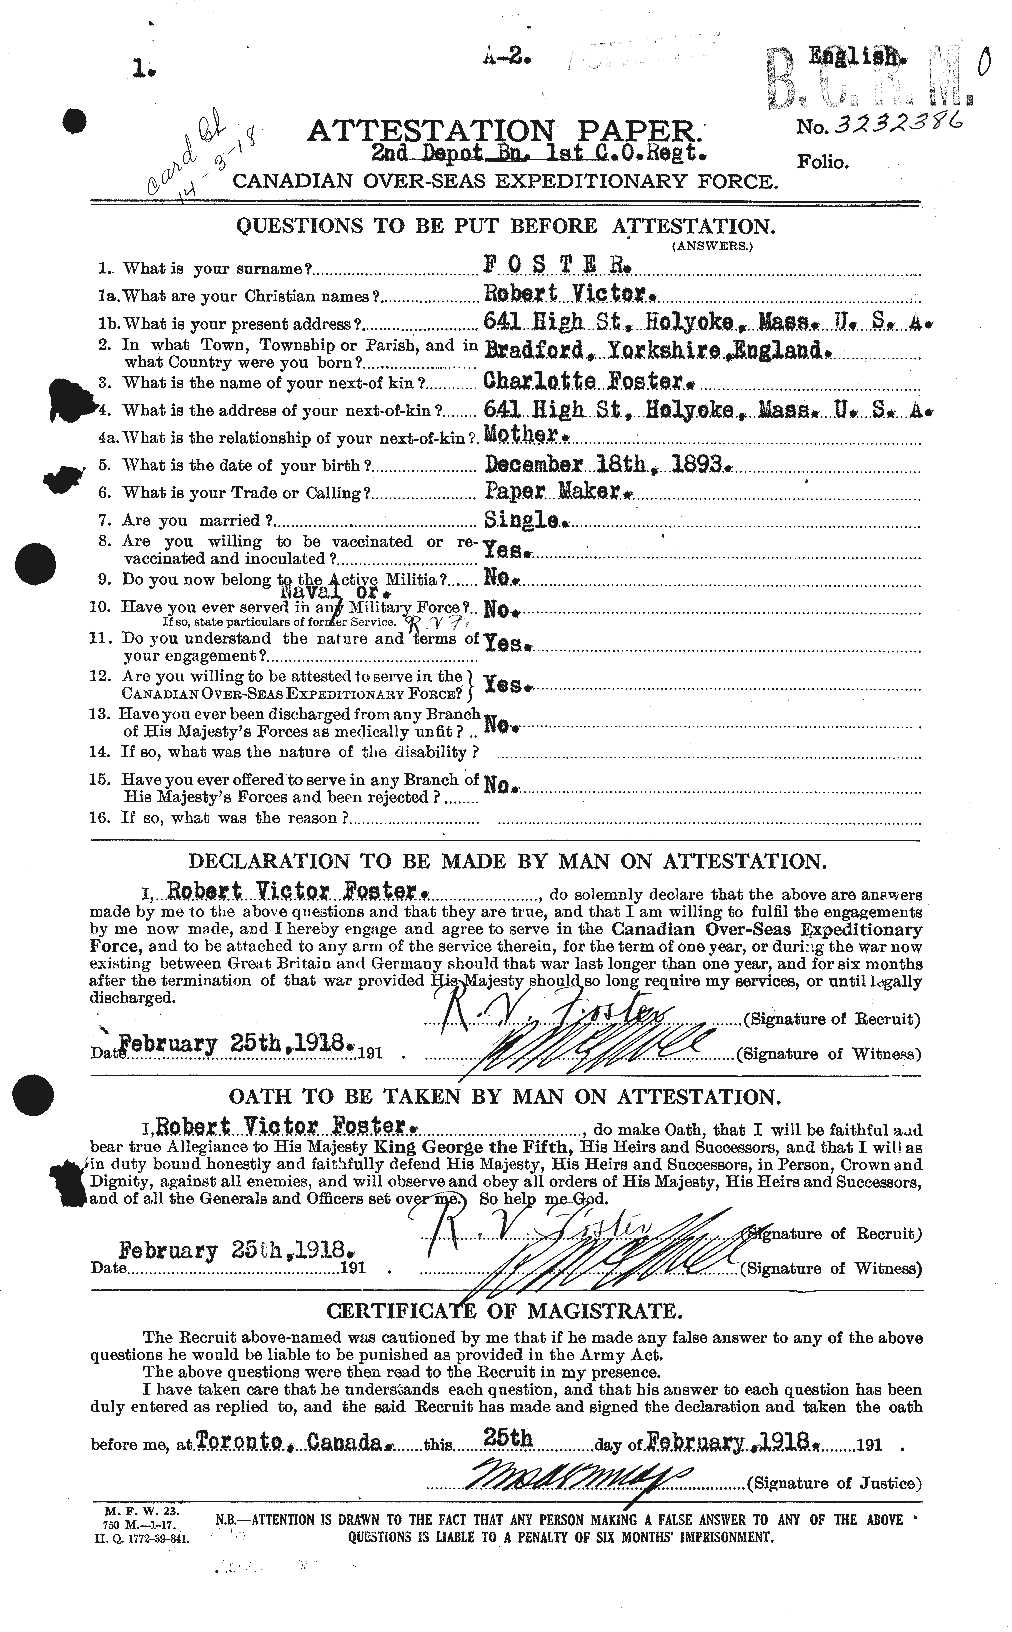 Dossiers du Personnel de la Première Guerre mondiale - CEC 335188a